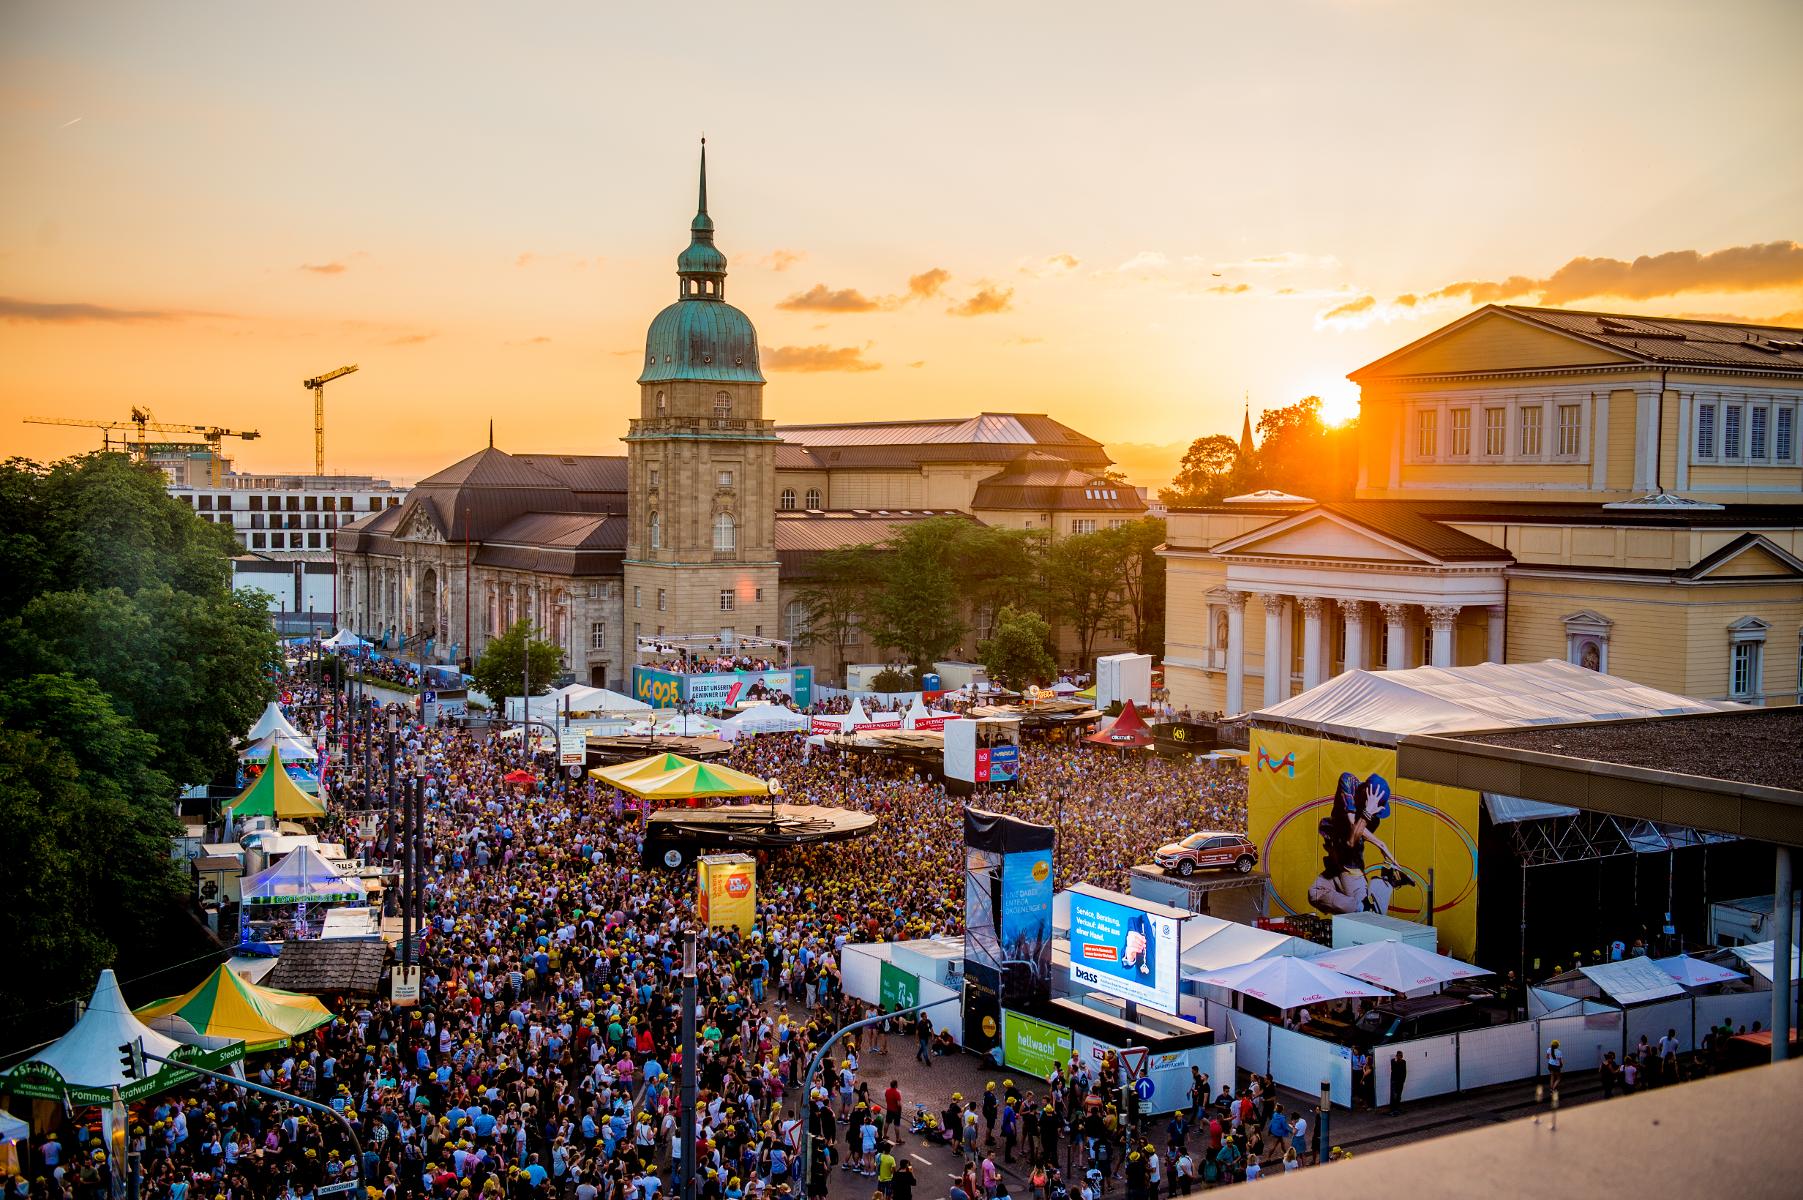 Das Schlossgrabenfest findet seit 1999 jährlich in der Darmstädter Innenstadt statt und ist Hessens größtes Musikfestival.